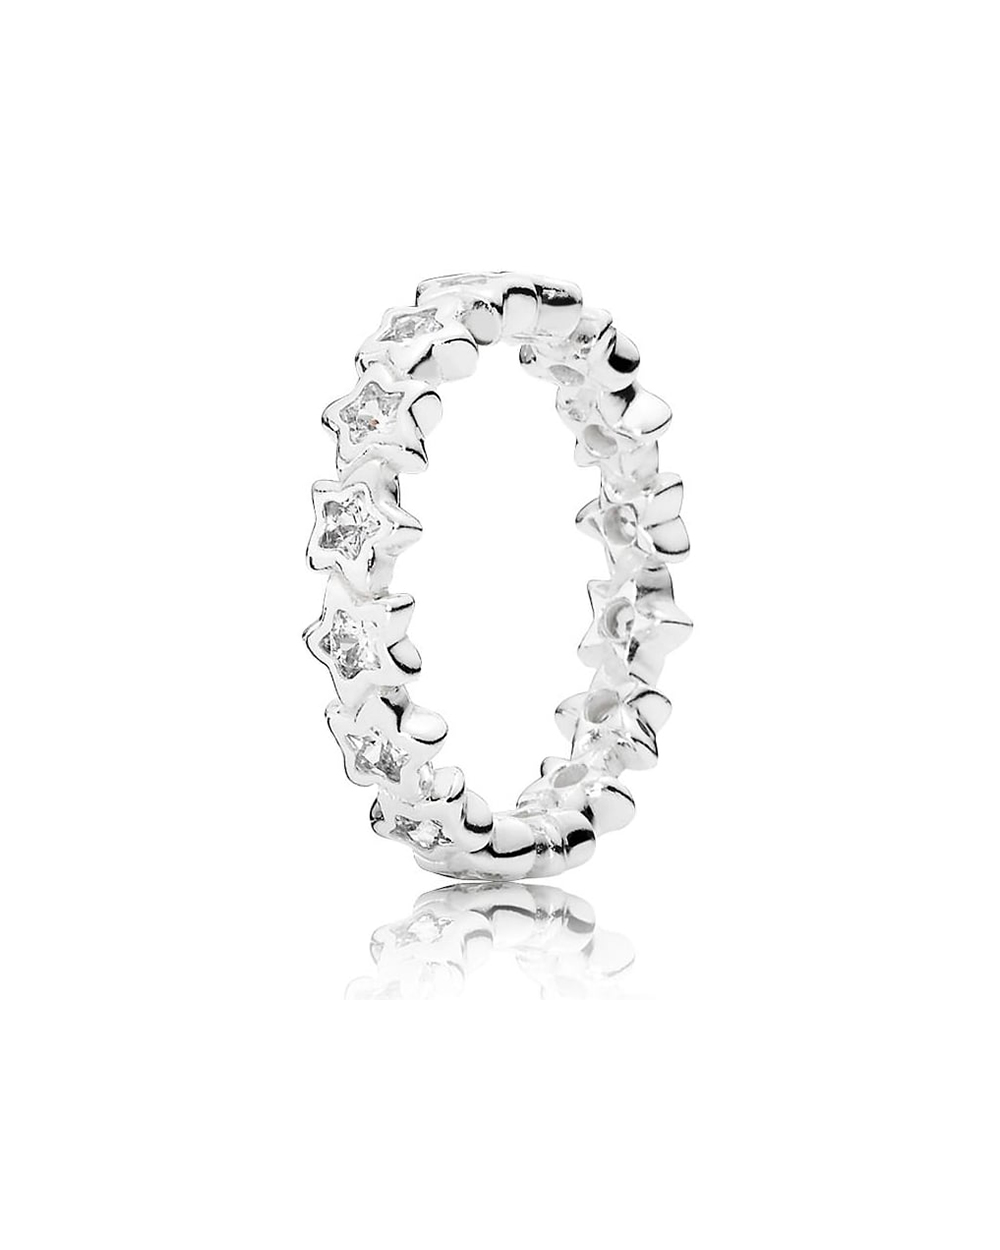 Starshine Ring, $139, from Pandora